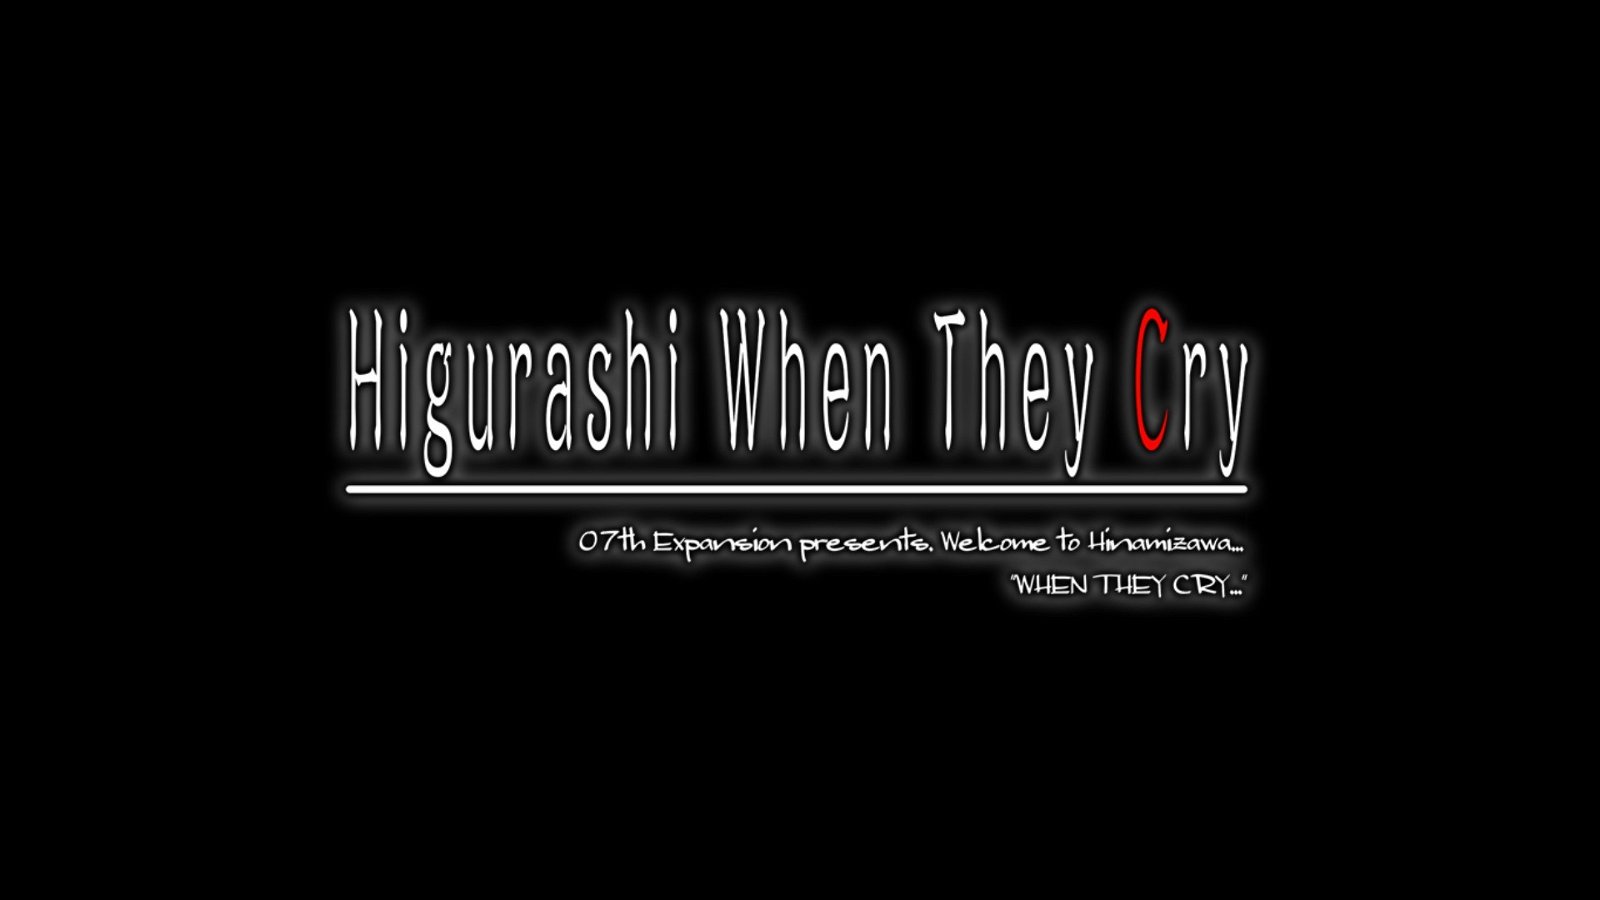 Higurashi no Naku Koro ni Receives Another TV Anime Series